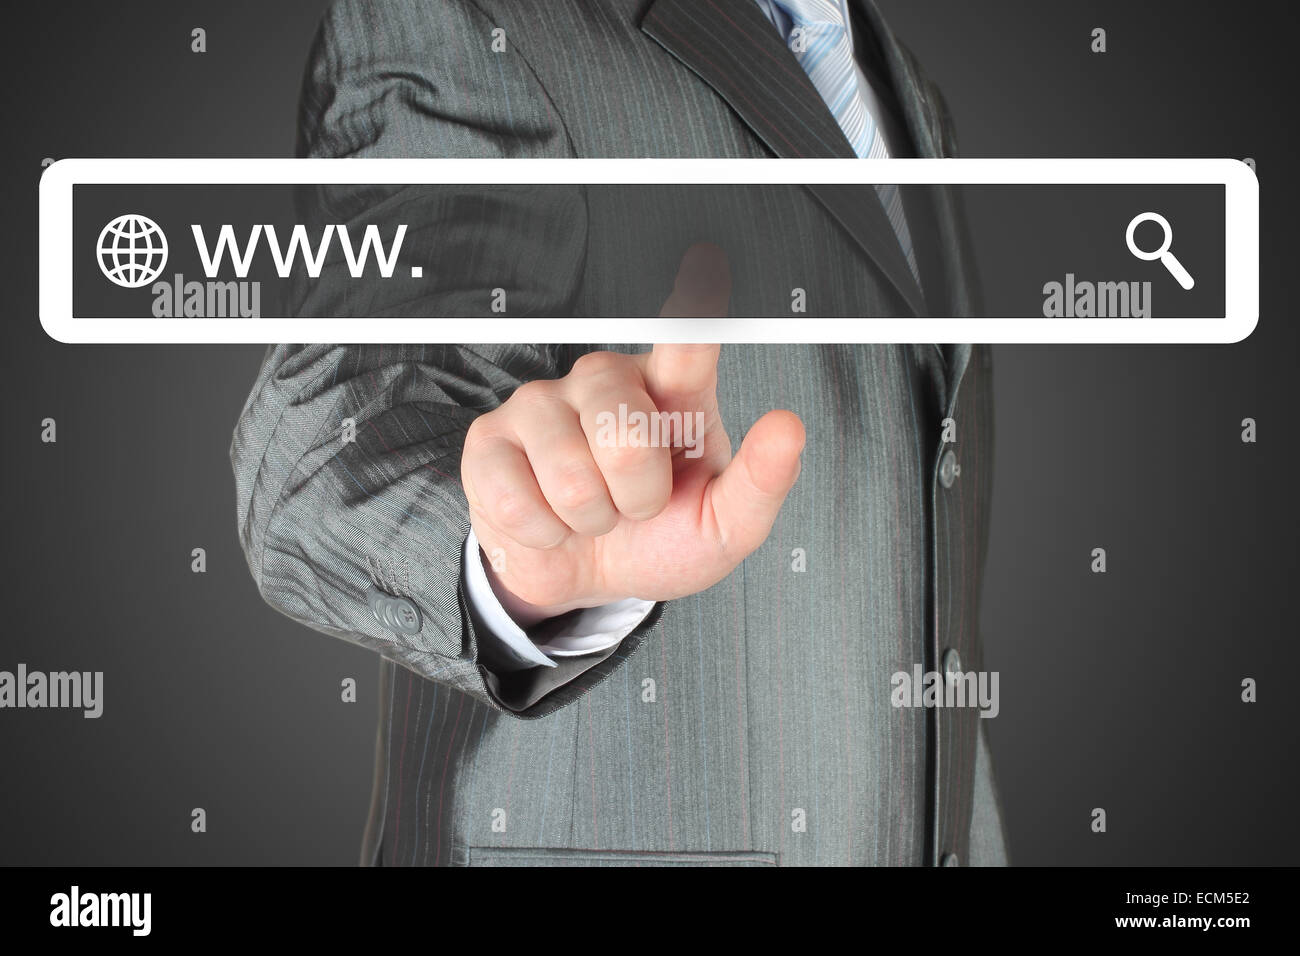 Empresario empujando la barra de búsqueda virtual sobre fondo negro, el concepto de internet Foto de stock